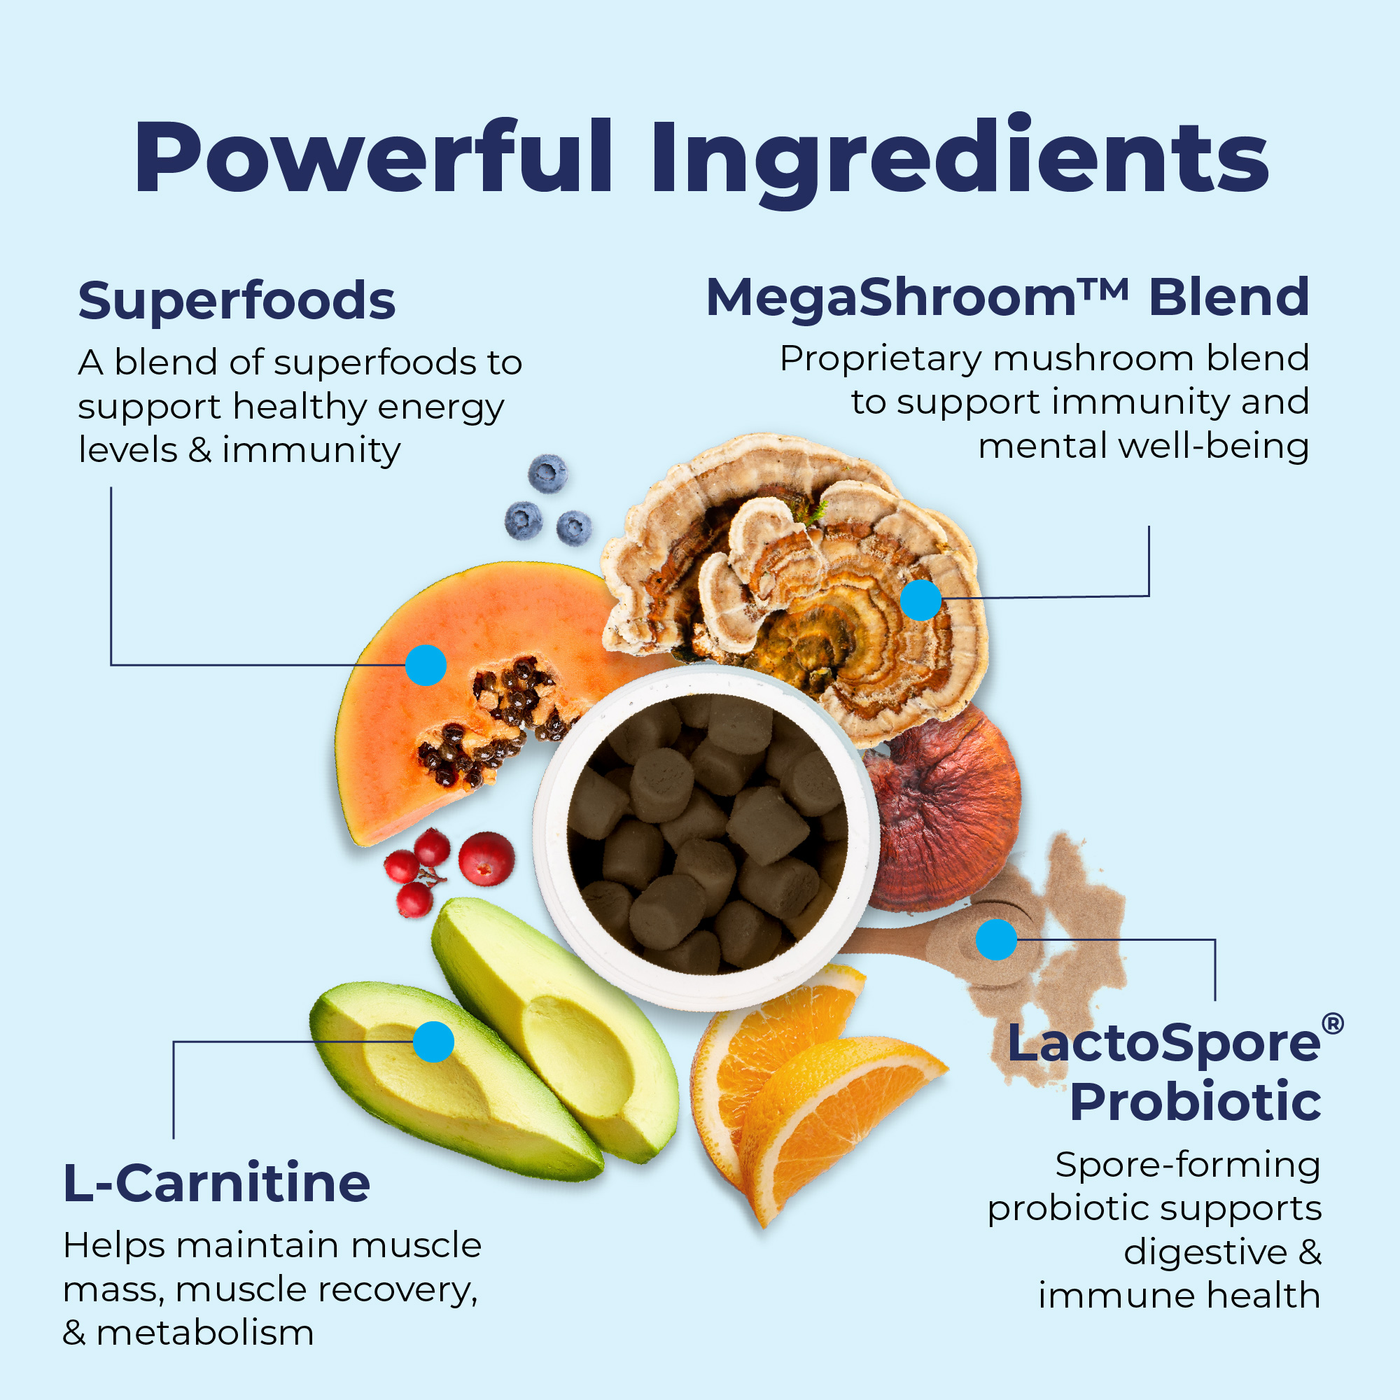 Powerful Ingredients like Superfoods